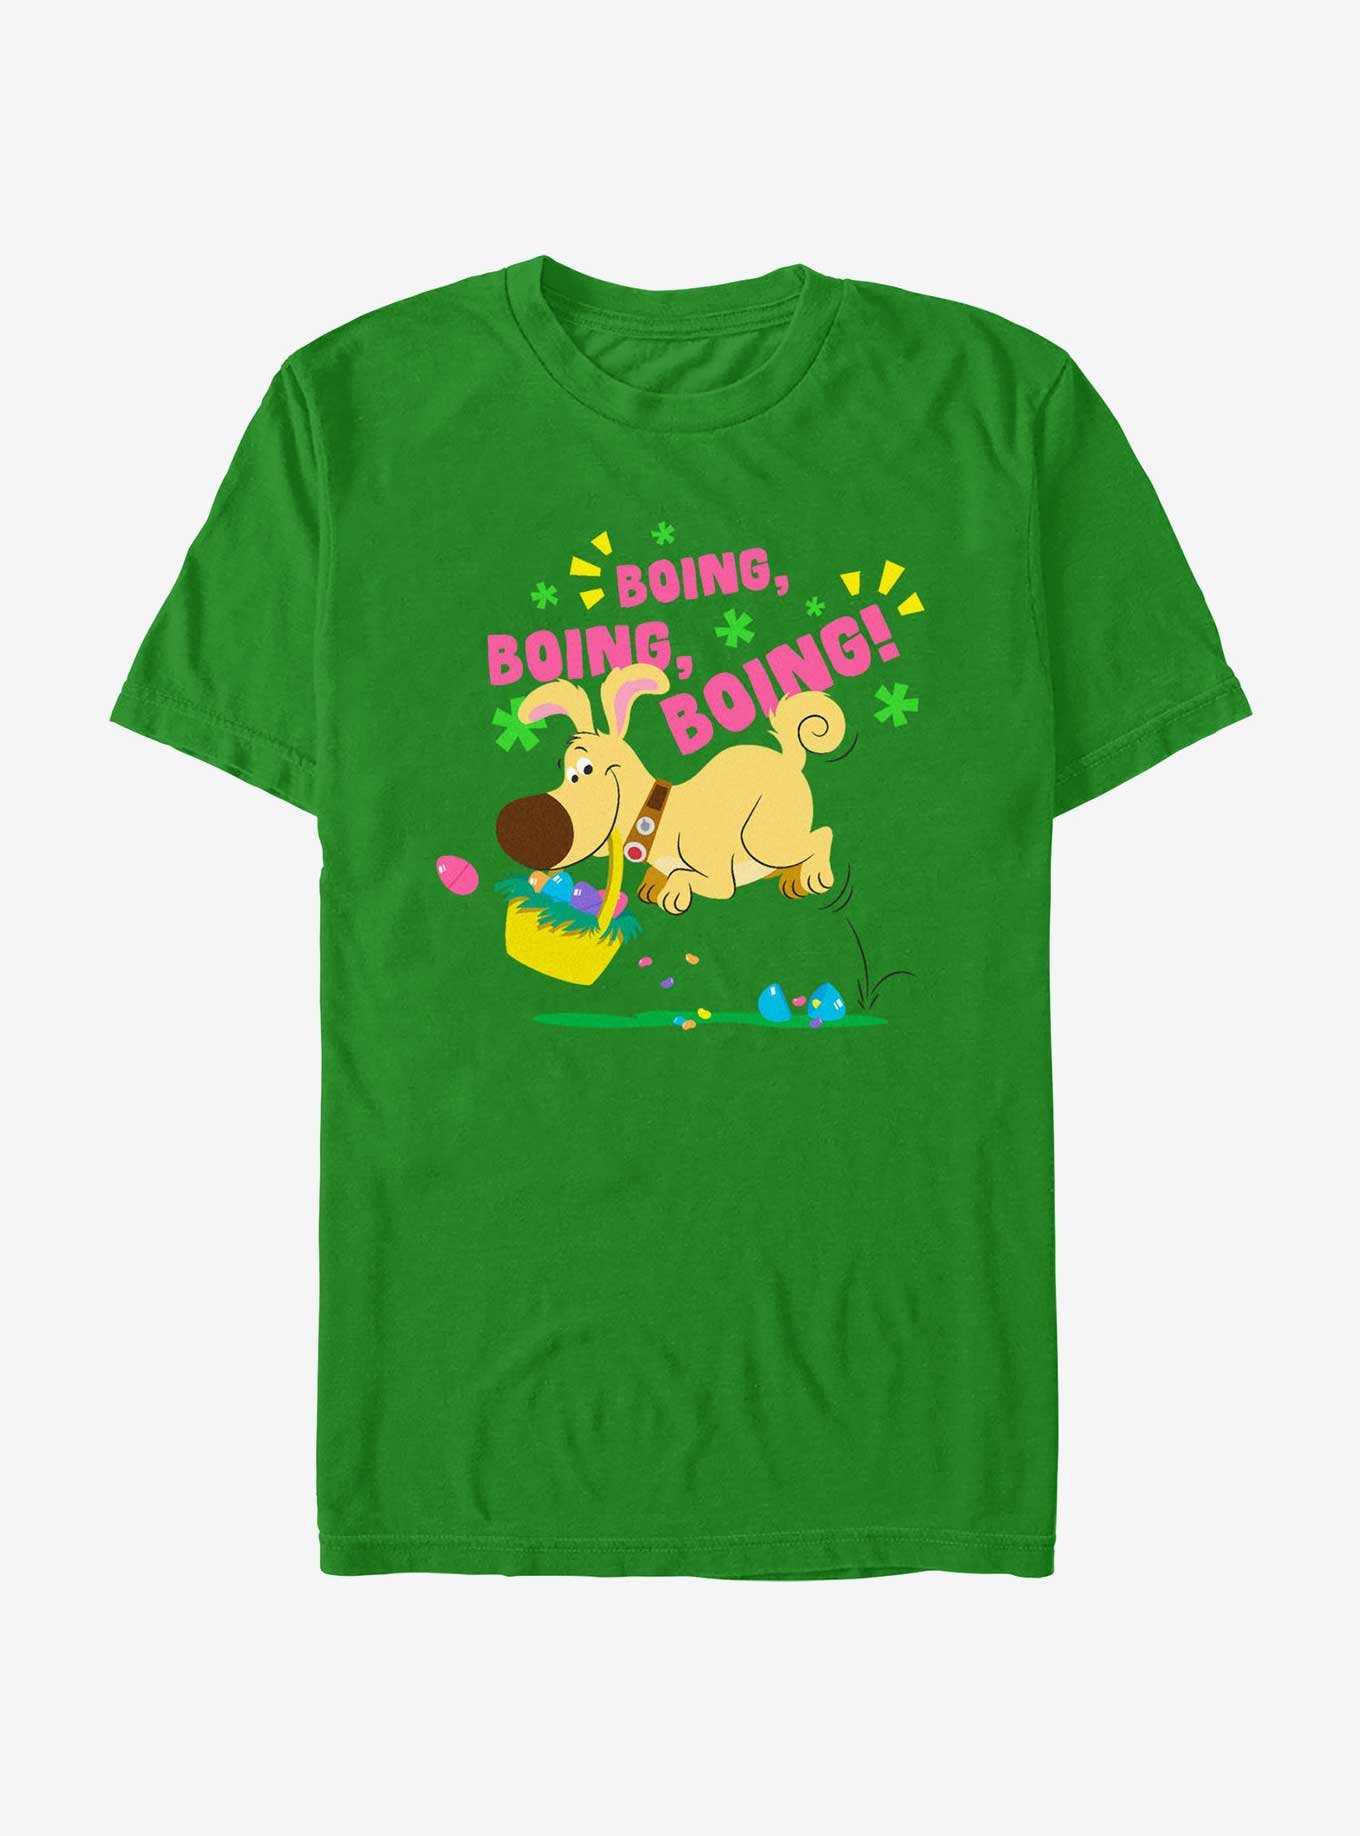 Disney Pixar Up Dug Bunny Hop T-Shirt, , hi-res